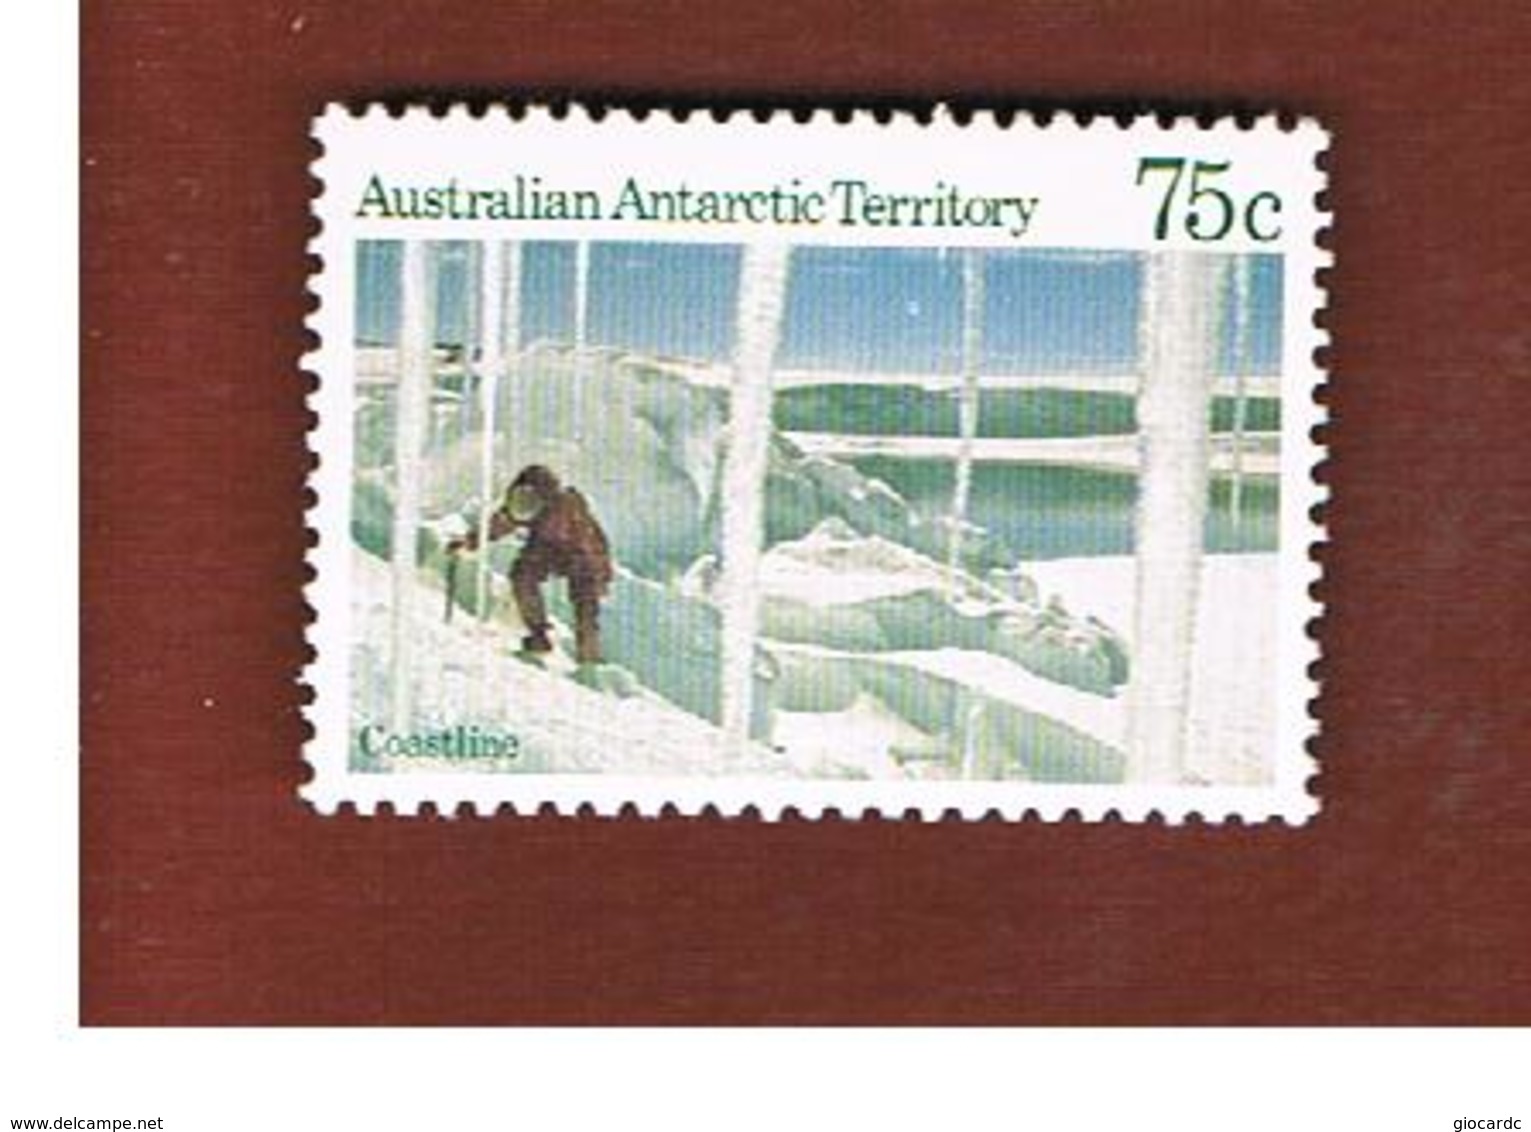 TERRITORI ANTARTICI AUSTRALIANI (AUSTRALIAN ANTARCTIC TERRITORY)  -  SG 74 -  1984 COASTLINE  - (MINT)** - Ongebruikt